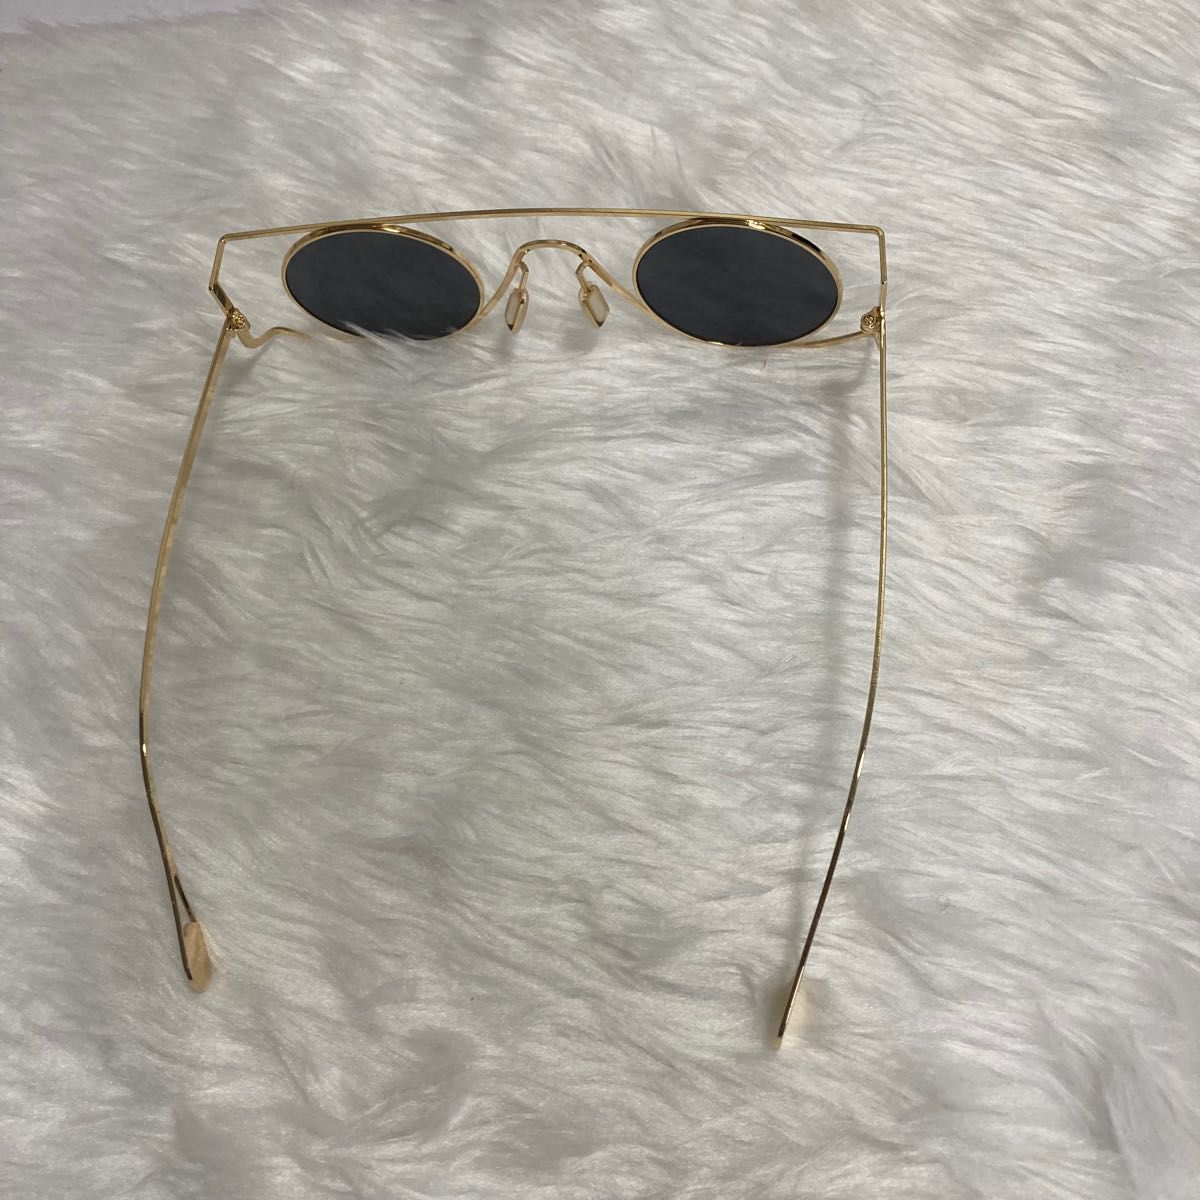 77丸メガネ眼鏡サングラスレトロ個性的めがねフレームパンク金格好いいゴールドUV